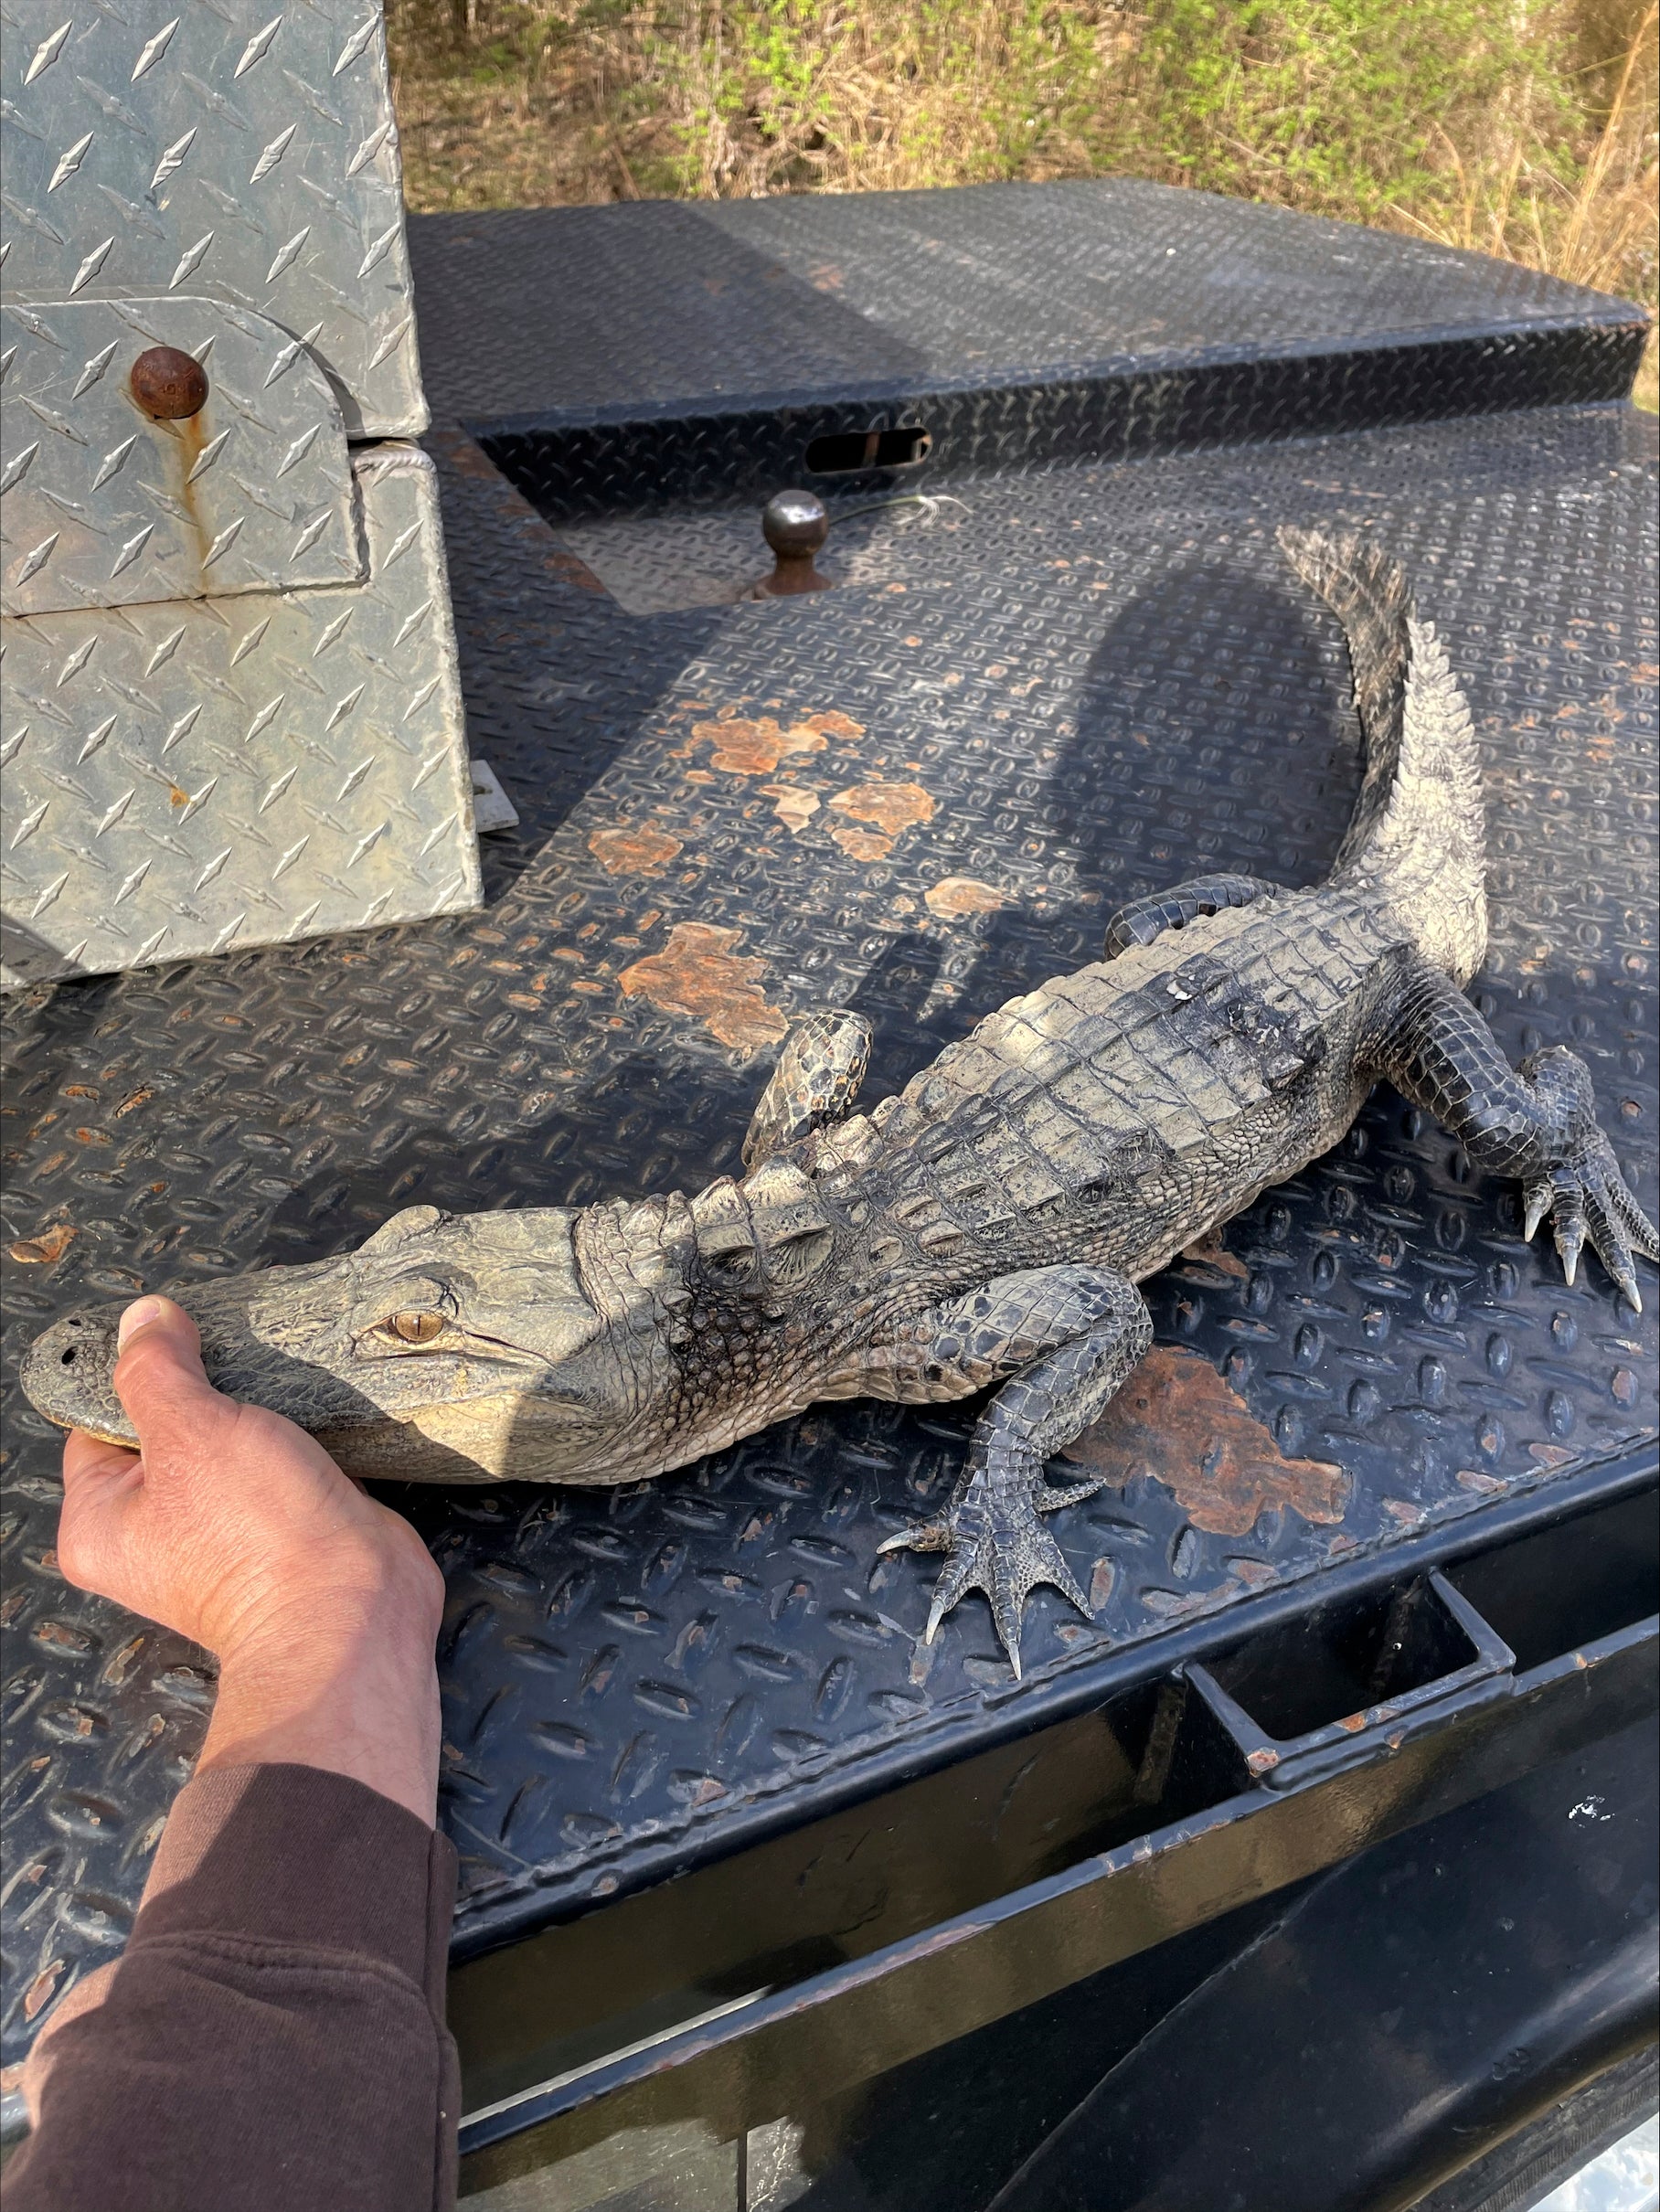 Alligator Caught